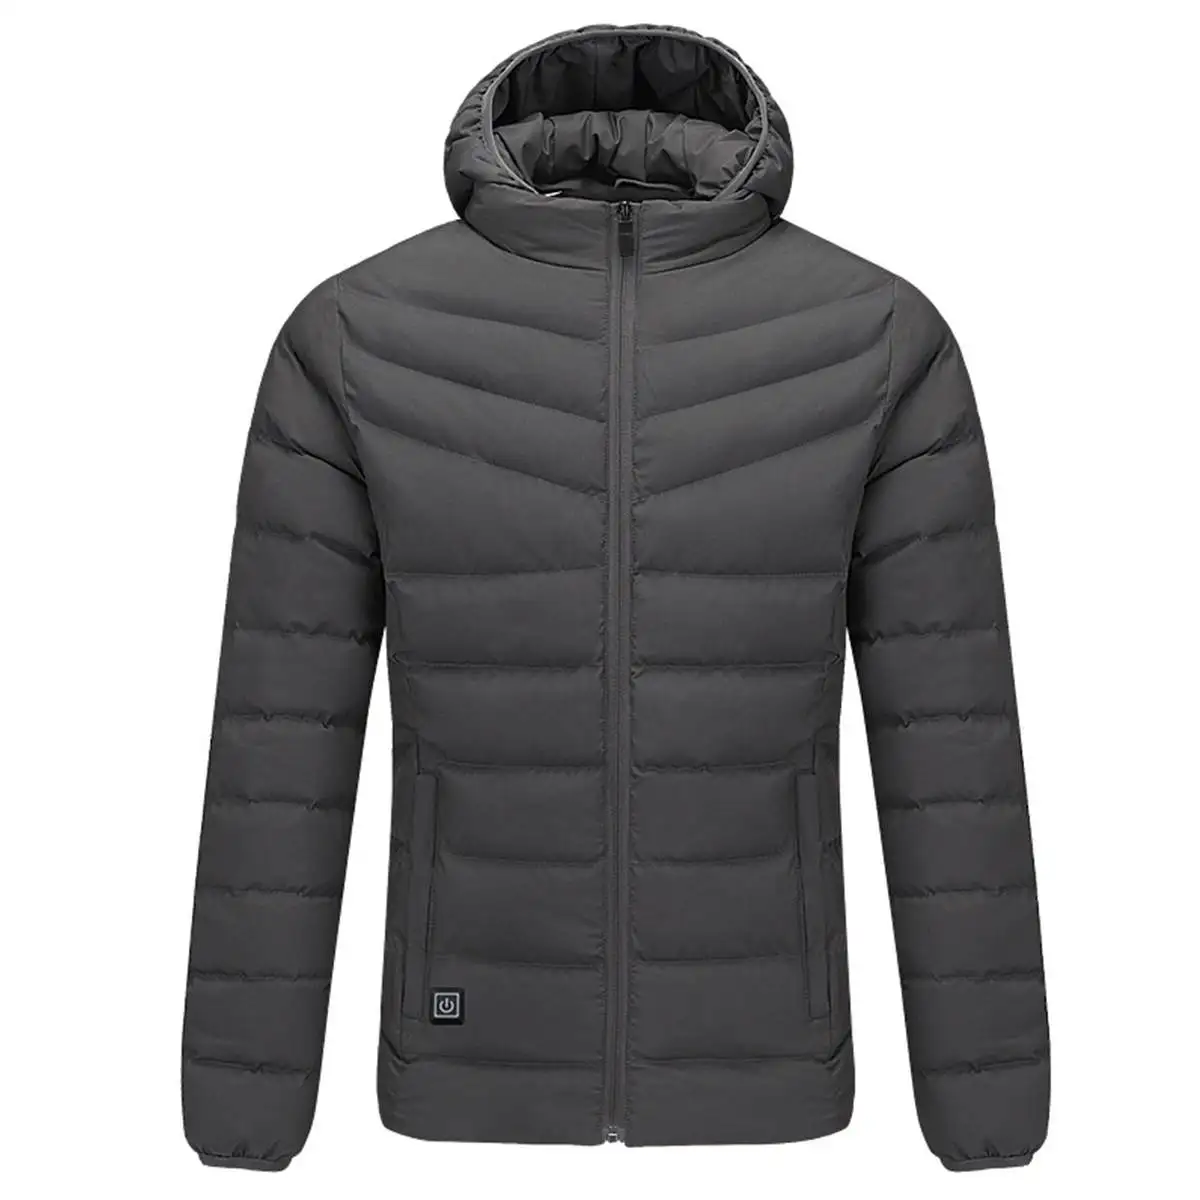 Зимняя пуховая куртка для пар, Водонепроницаемая USB куртка с подогревом для катания на лыжах, походов, скалолазания, углеродное волокно, грелка, хлопковое пальто - Цвет: Серый